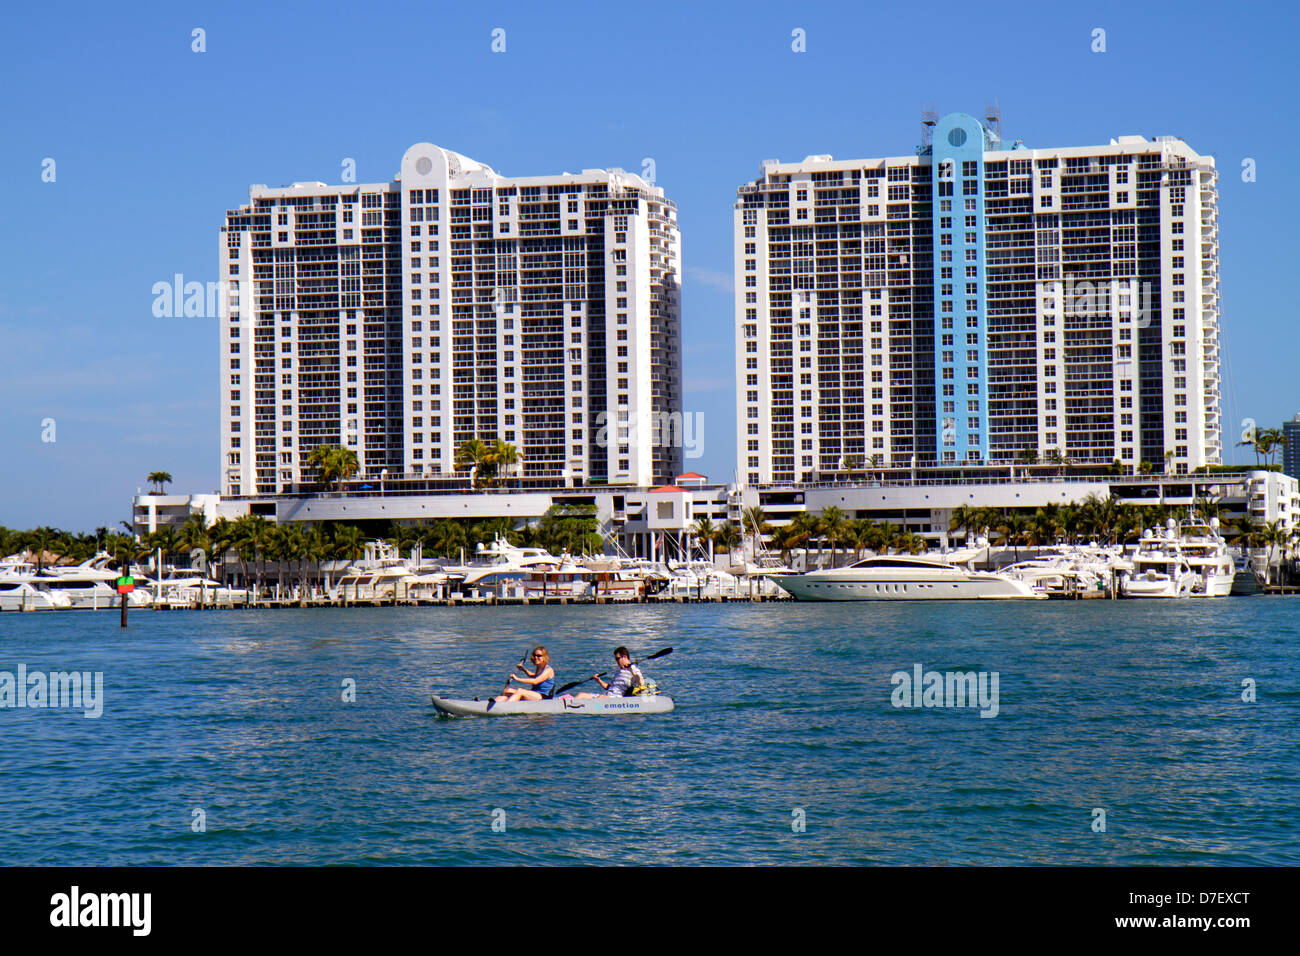 Miami Beach Florida, Biscayne Bay, Hochhaus Wolkenkratzer Gebäude Gebäude Eigentumswohnung Wohnapartments Gehäuse, Skyline der Stadt Stockfoto